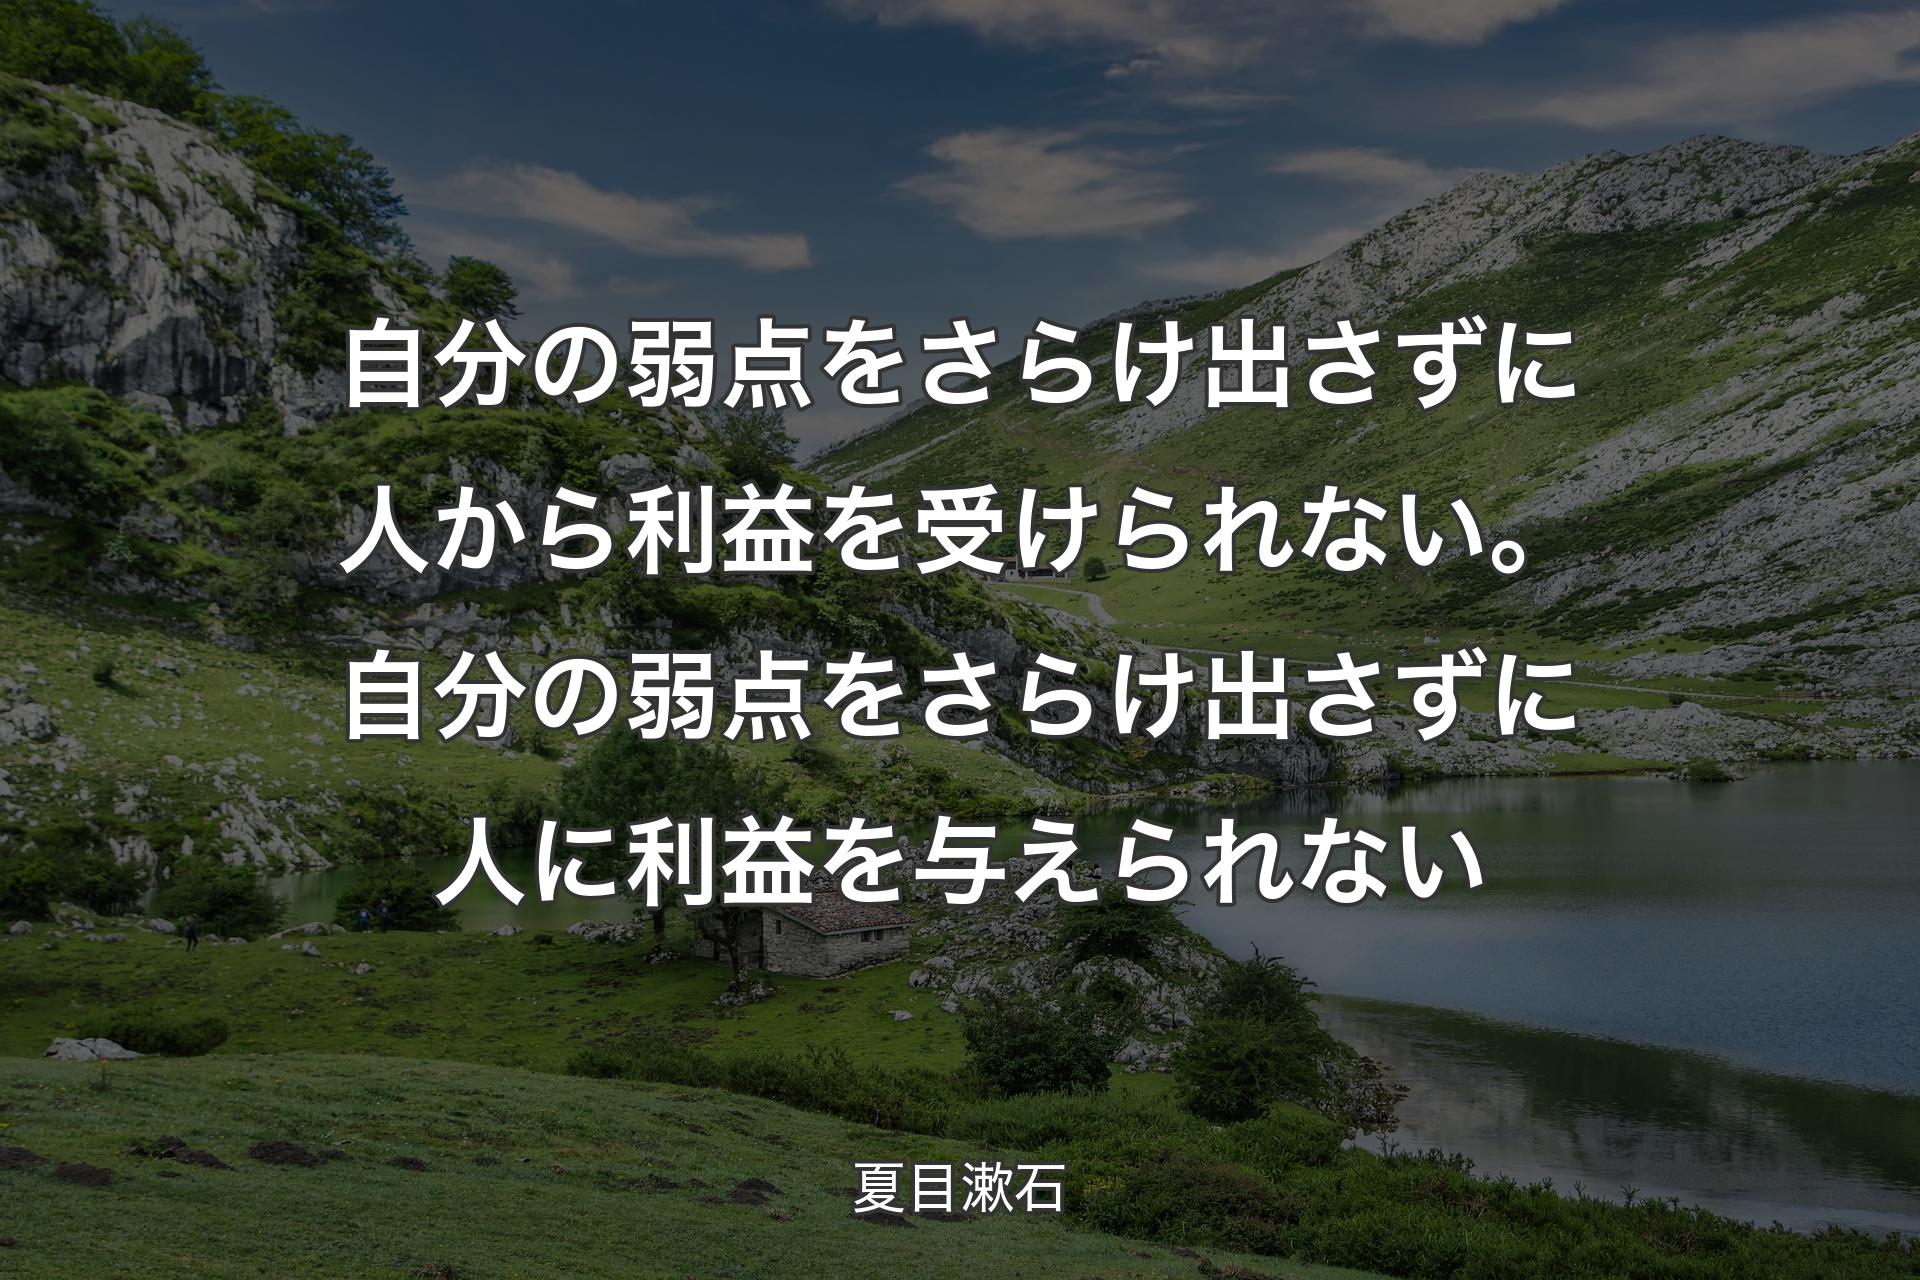 【背景1】自分の弱点をさらけ出さずに人から利益を受けられない。自分の弱点をさらけ出さずに人に利益を与えられない - 夏目漱石